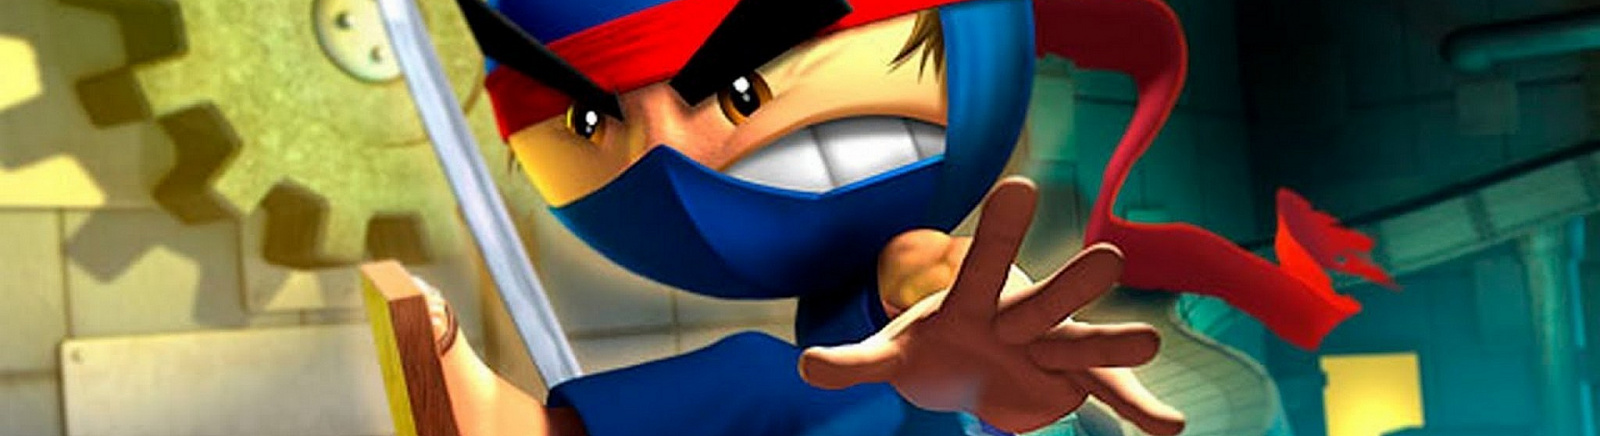 Дата выхода I-Ninja  на PC, PS2 и Xbox в России и во всем мире